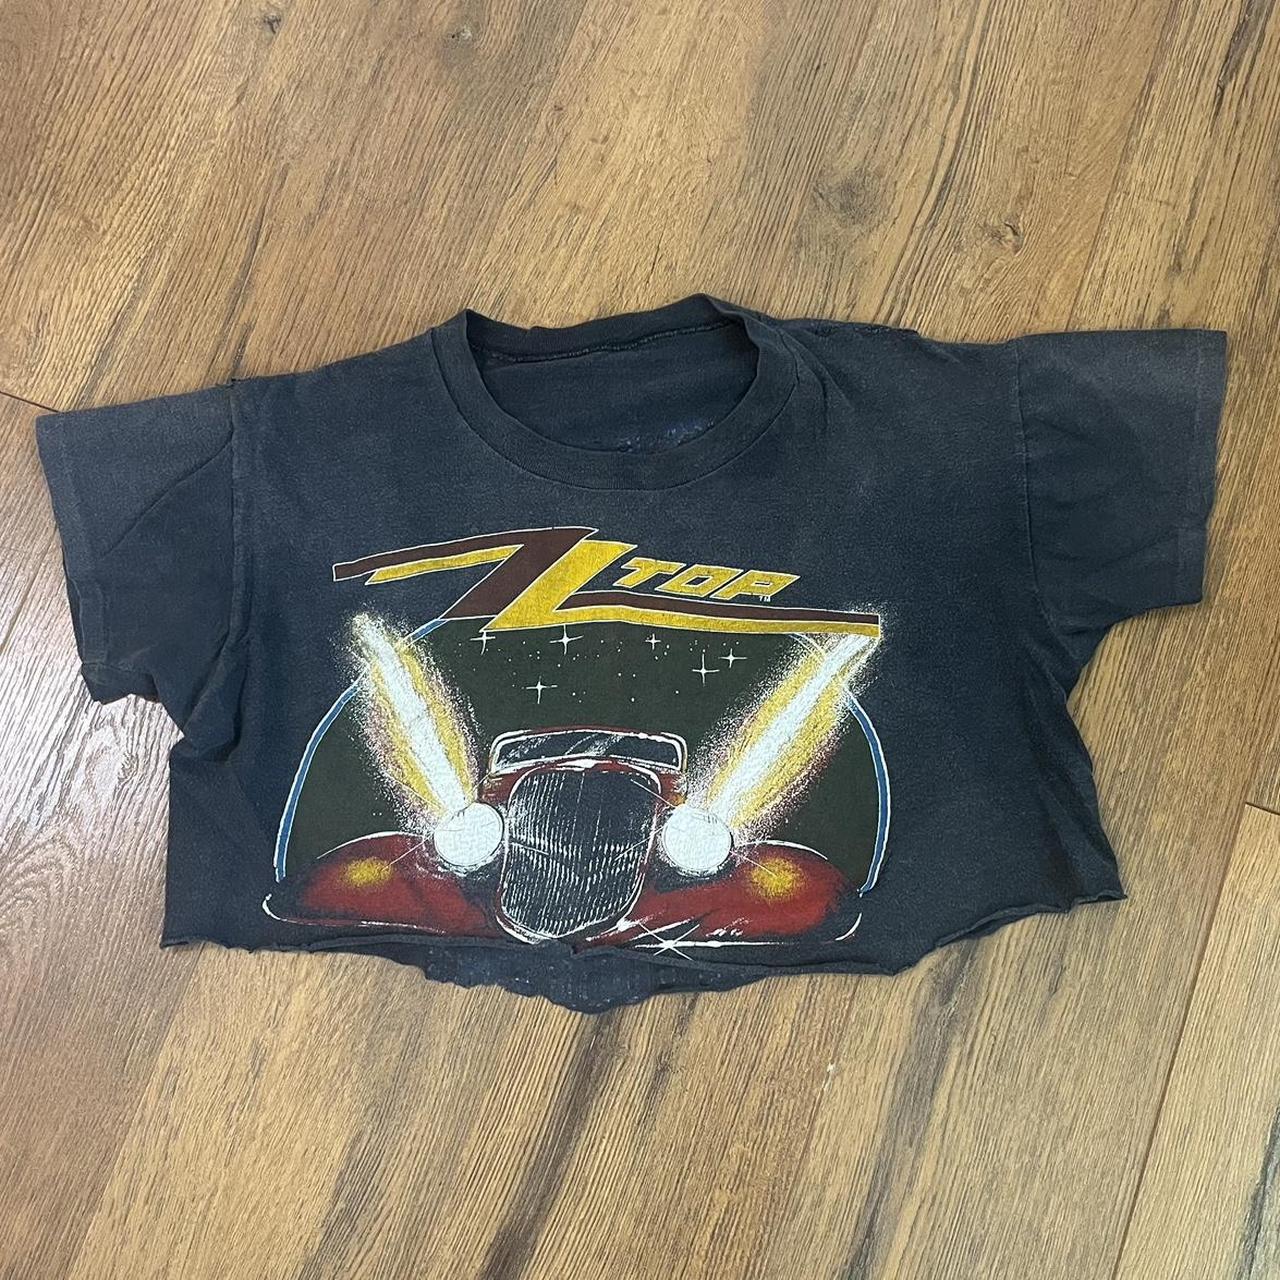 ZZ Top Eliminator Tour 1983-1984 Men's Unisex Concert T-shirt